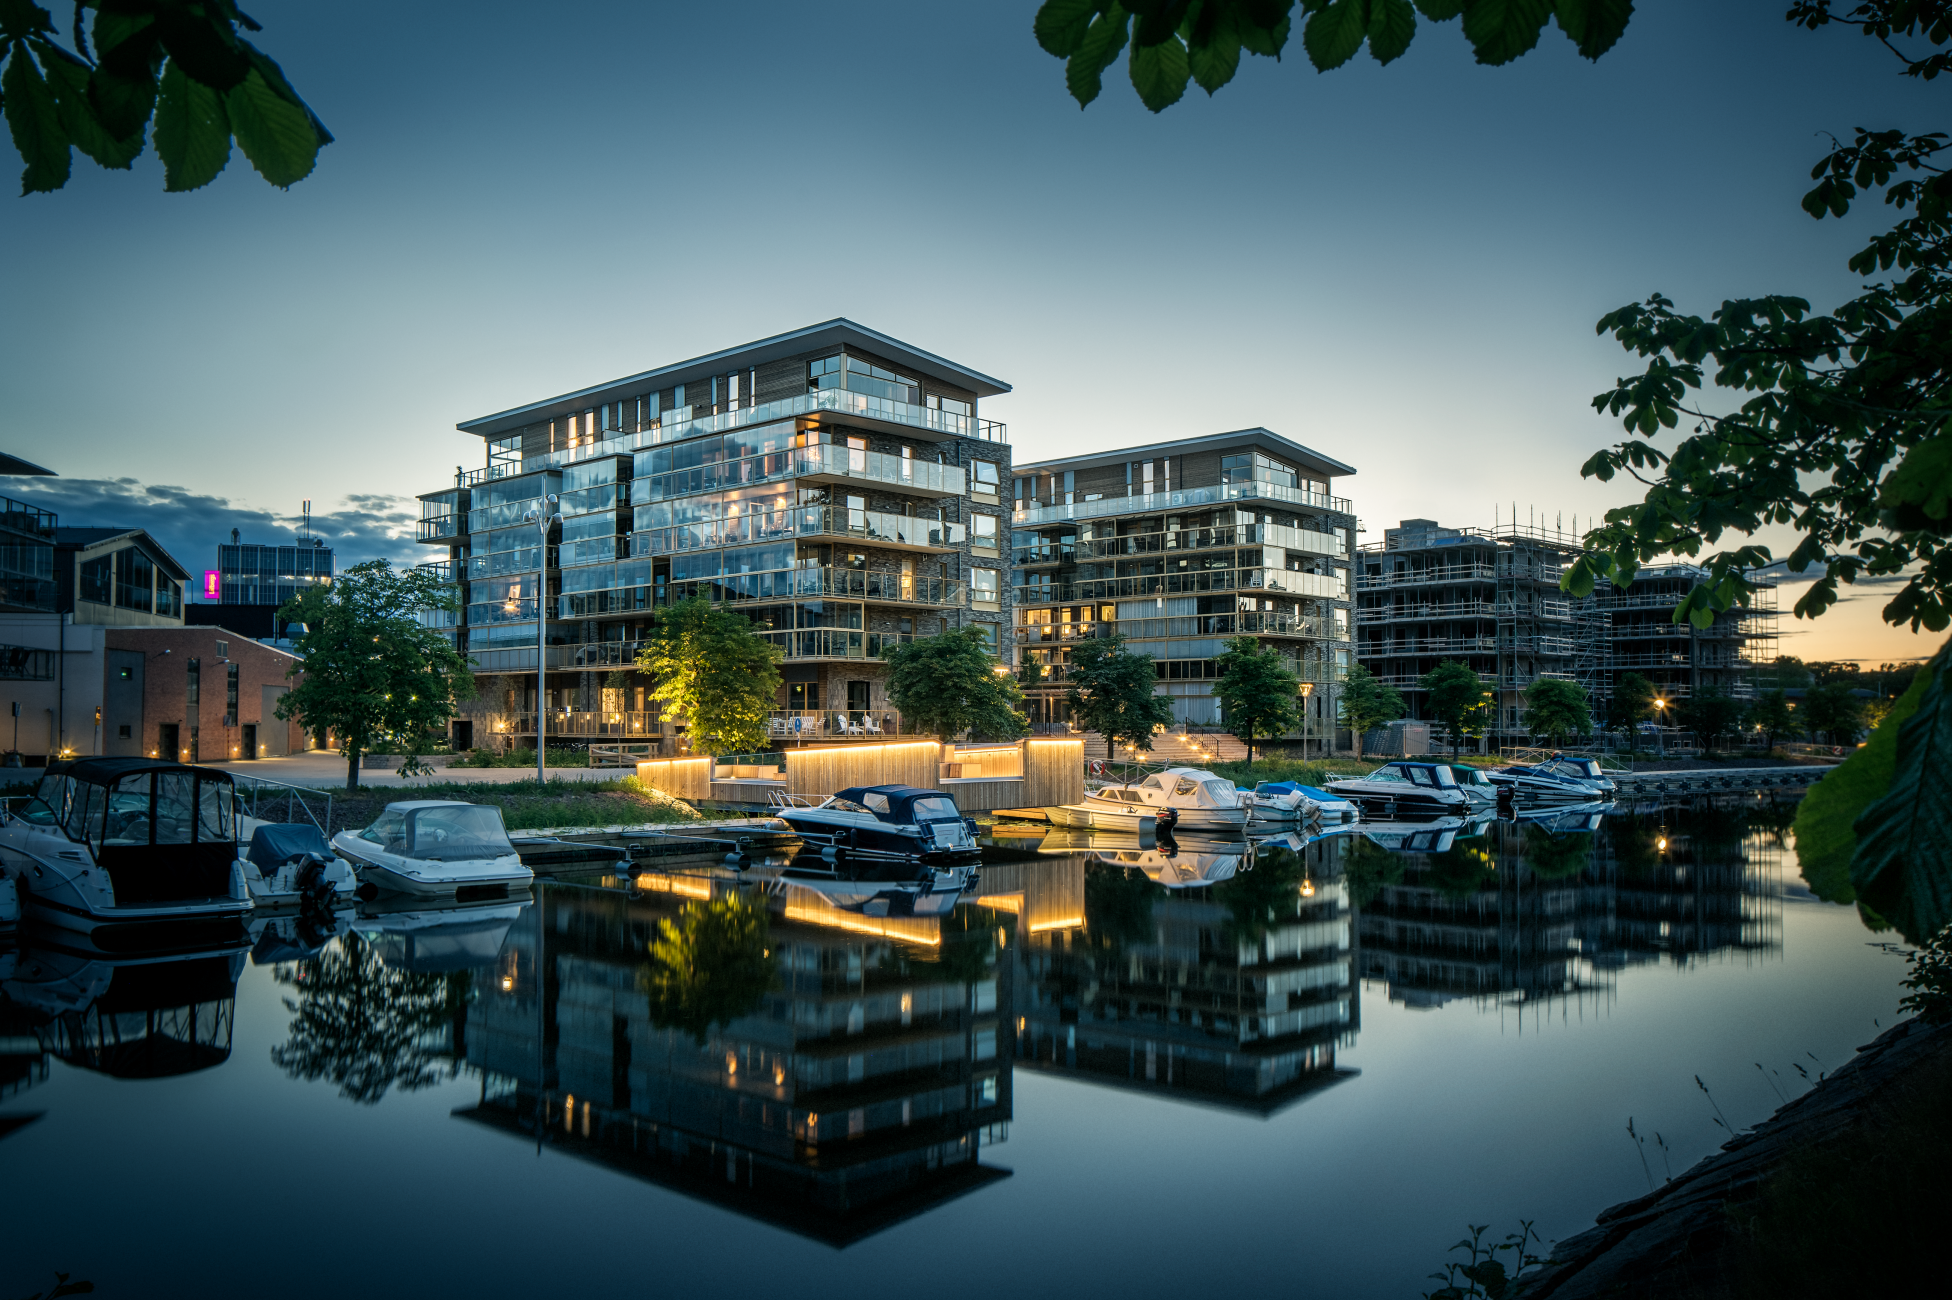 Löfberg fastigheter för flerbostadshus vid Pråmkanalen vid Inre hamn. Byggnaderna är ritade av Tengbom arkitekter.